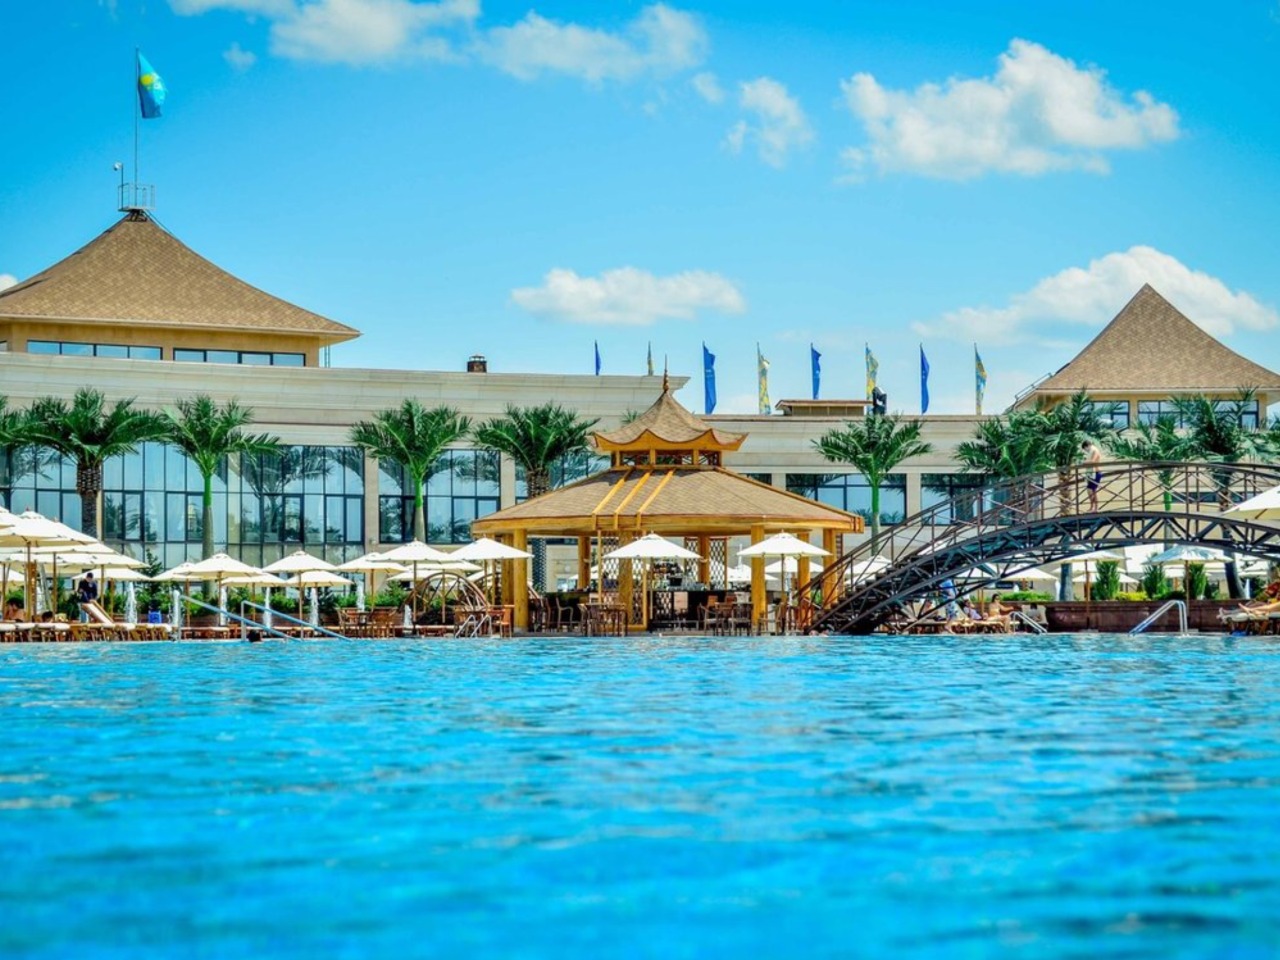 Park Resort “8 озер” — цветущий оазис в степи | Цена 18000₽, отзывы, описание экскурсии